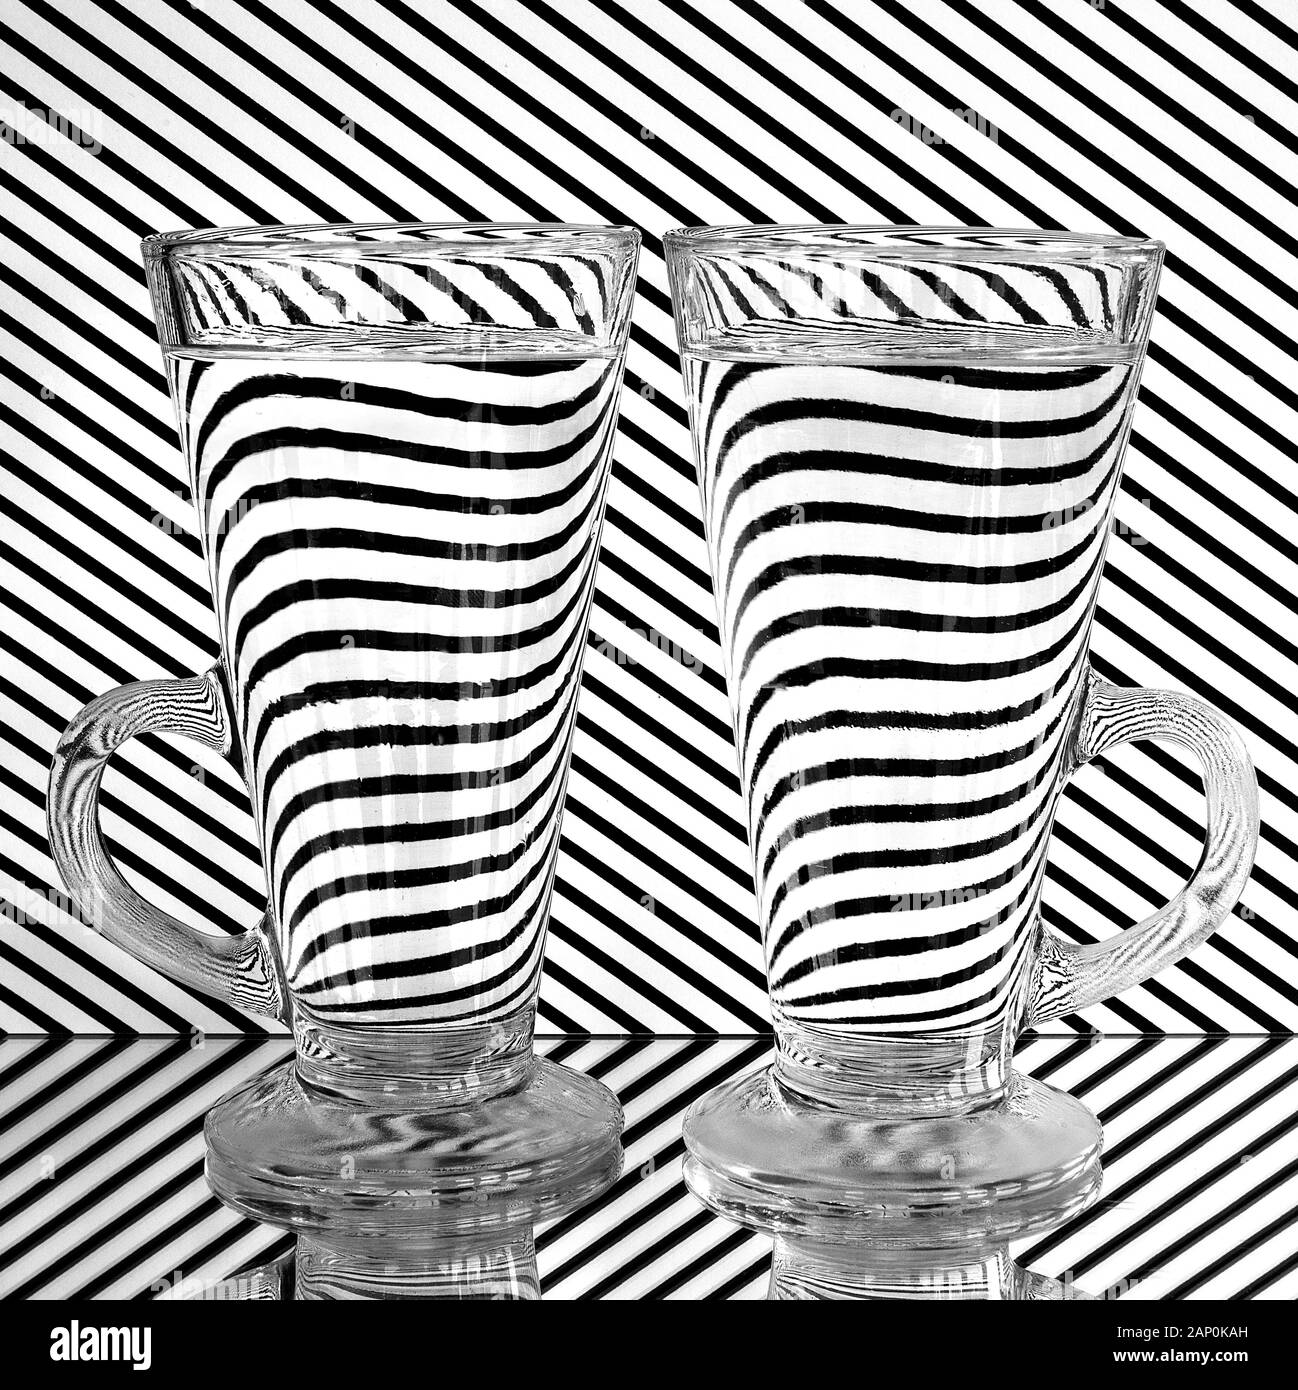 Ein Bild, das optische Effekte in Glas und Wasser sowohl für künstlerische als auch für pädagogische Zwecke demonstriert. Stockfoto